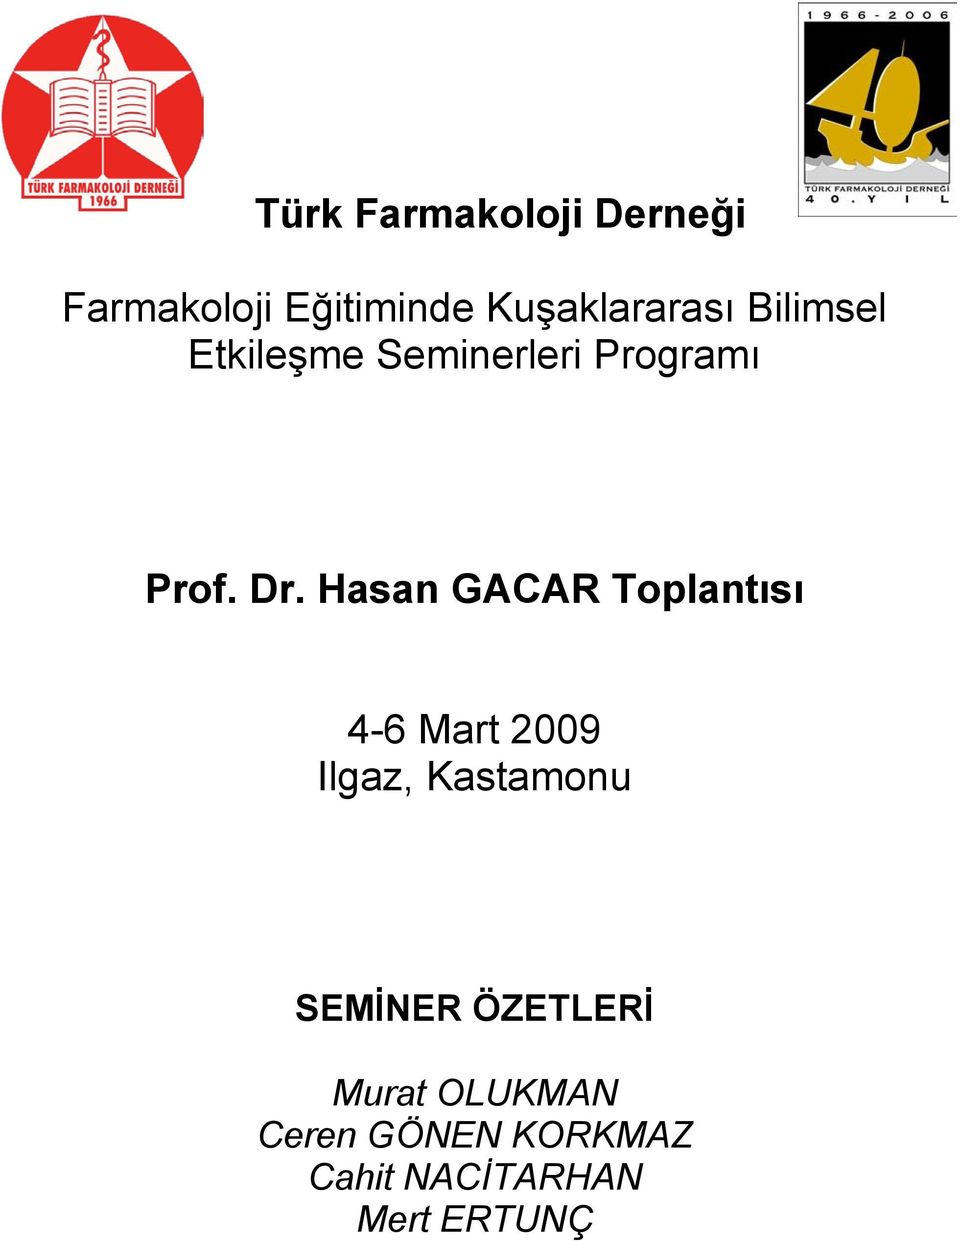 Hasan GACAR Toplantısı 4-6 Mart 2009 Ilgaz, Kastamonu SEMİNER